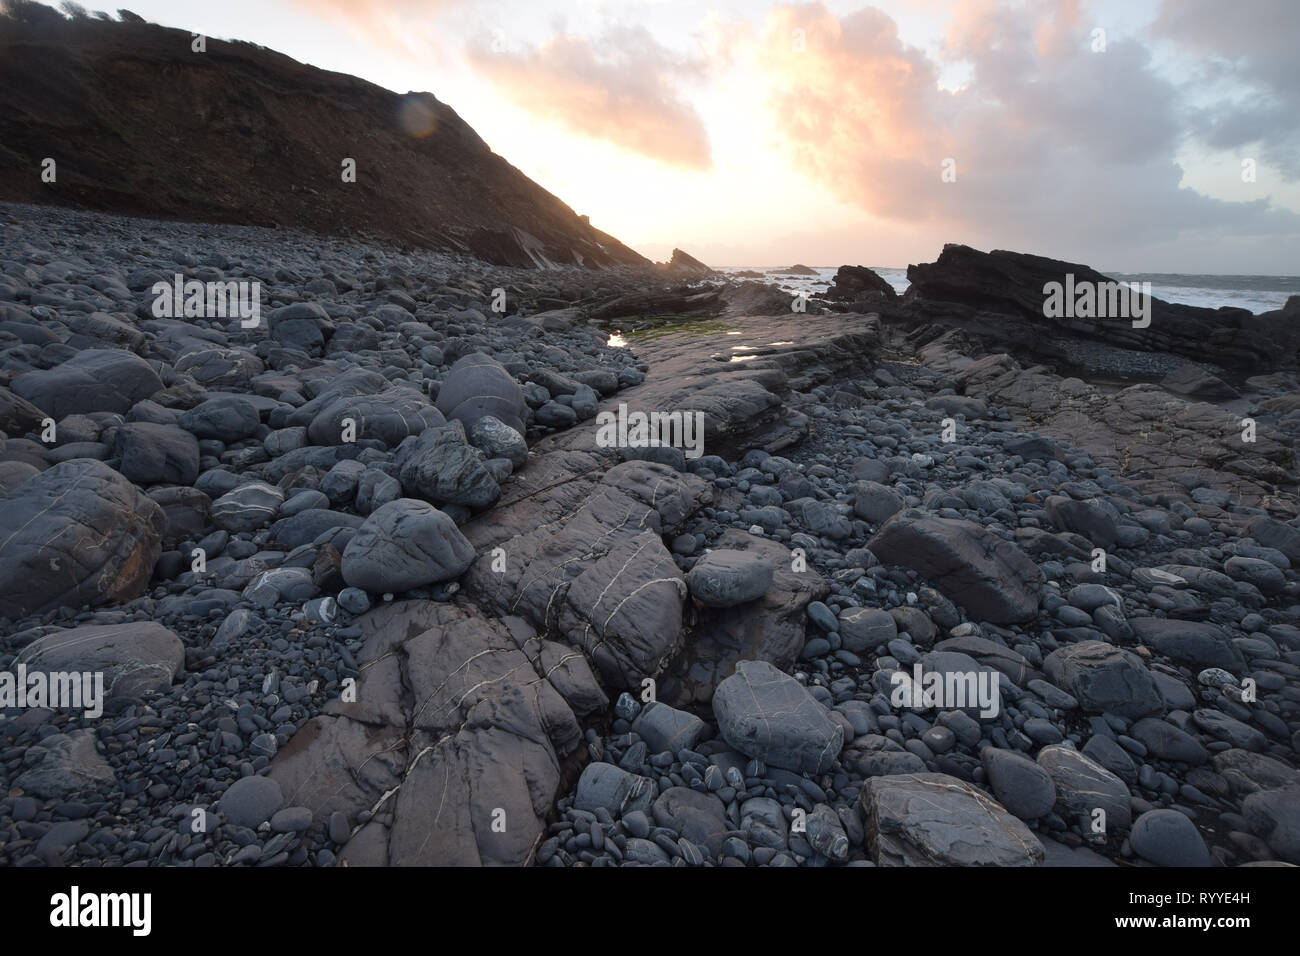 Millook Haven North Cornish Coast at sunset Stock Photo